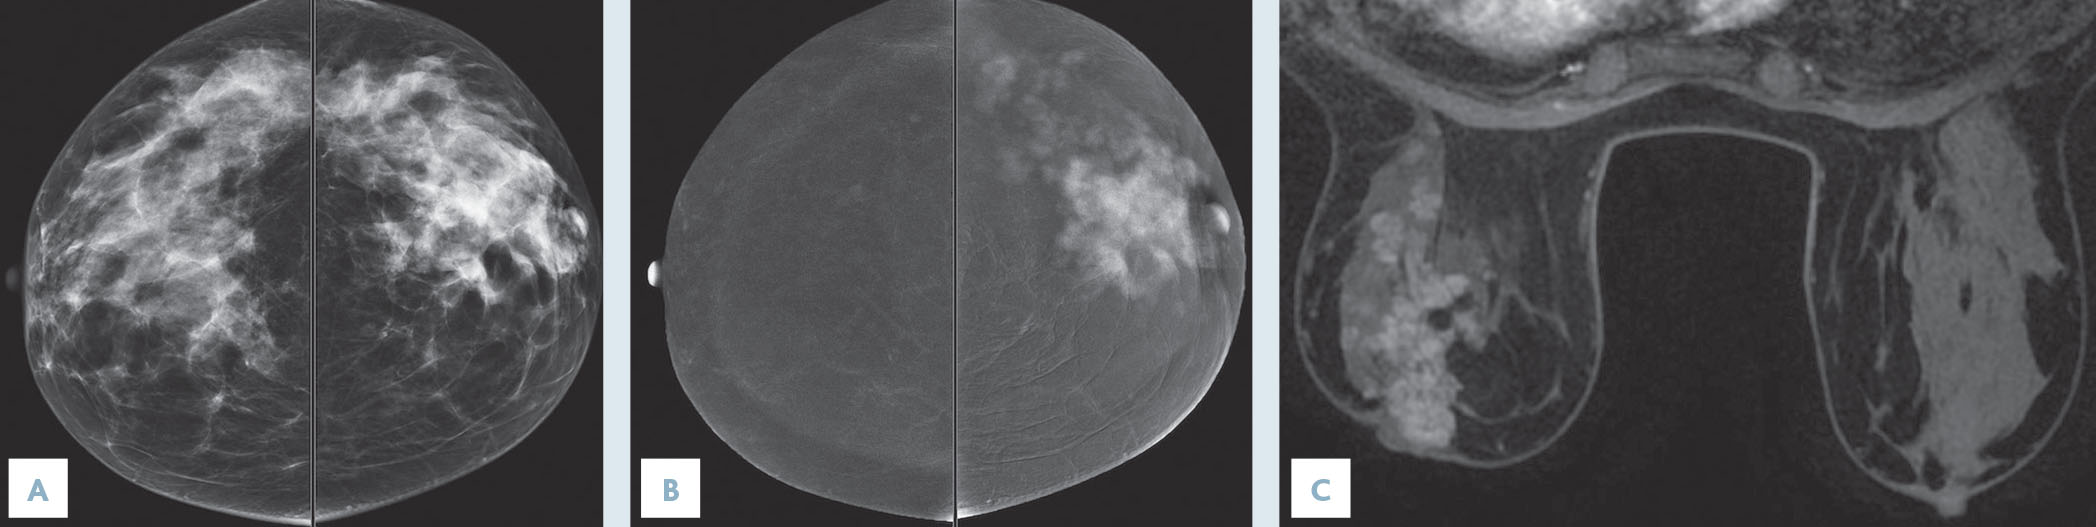 L'angiomammographie : nouvelle technique d'imagerie diagnostique des lésions du sein - Figure 2